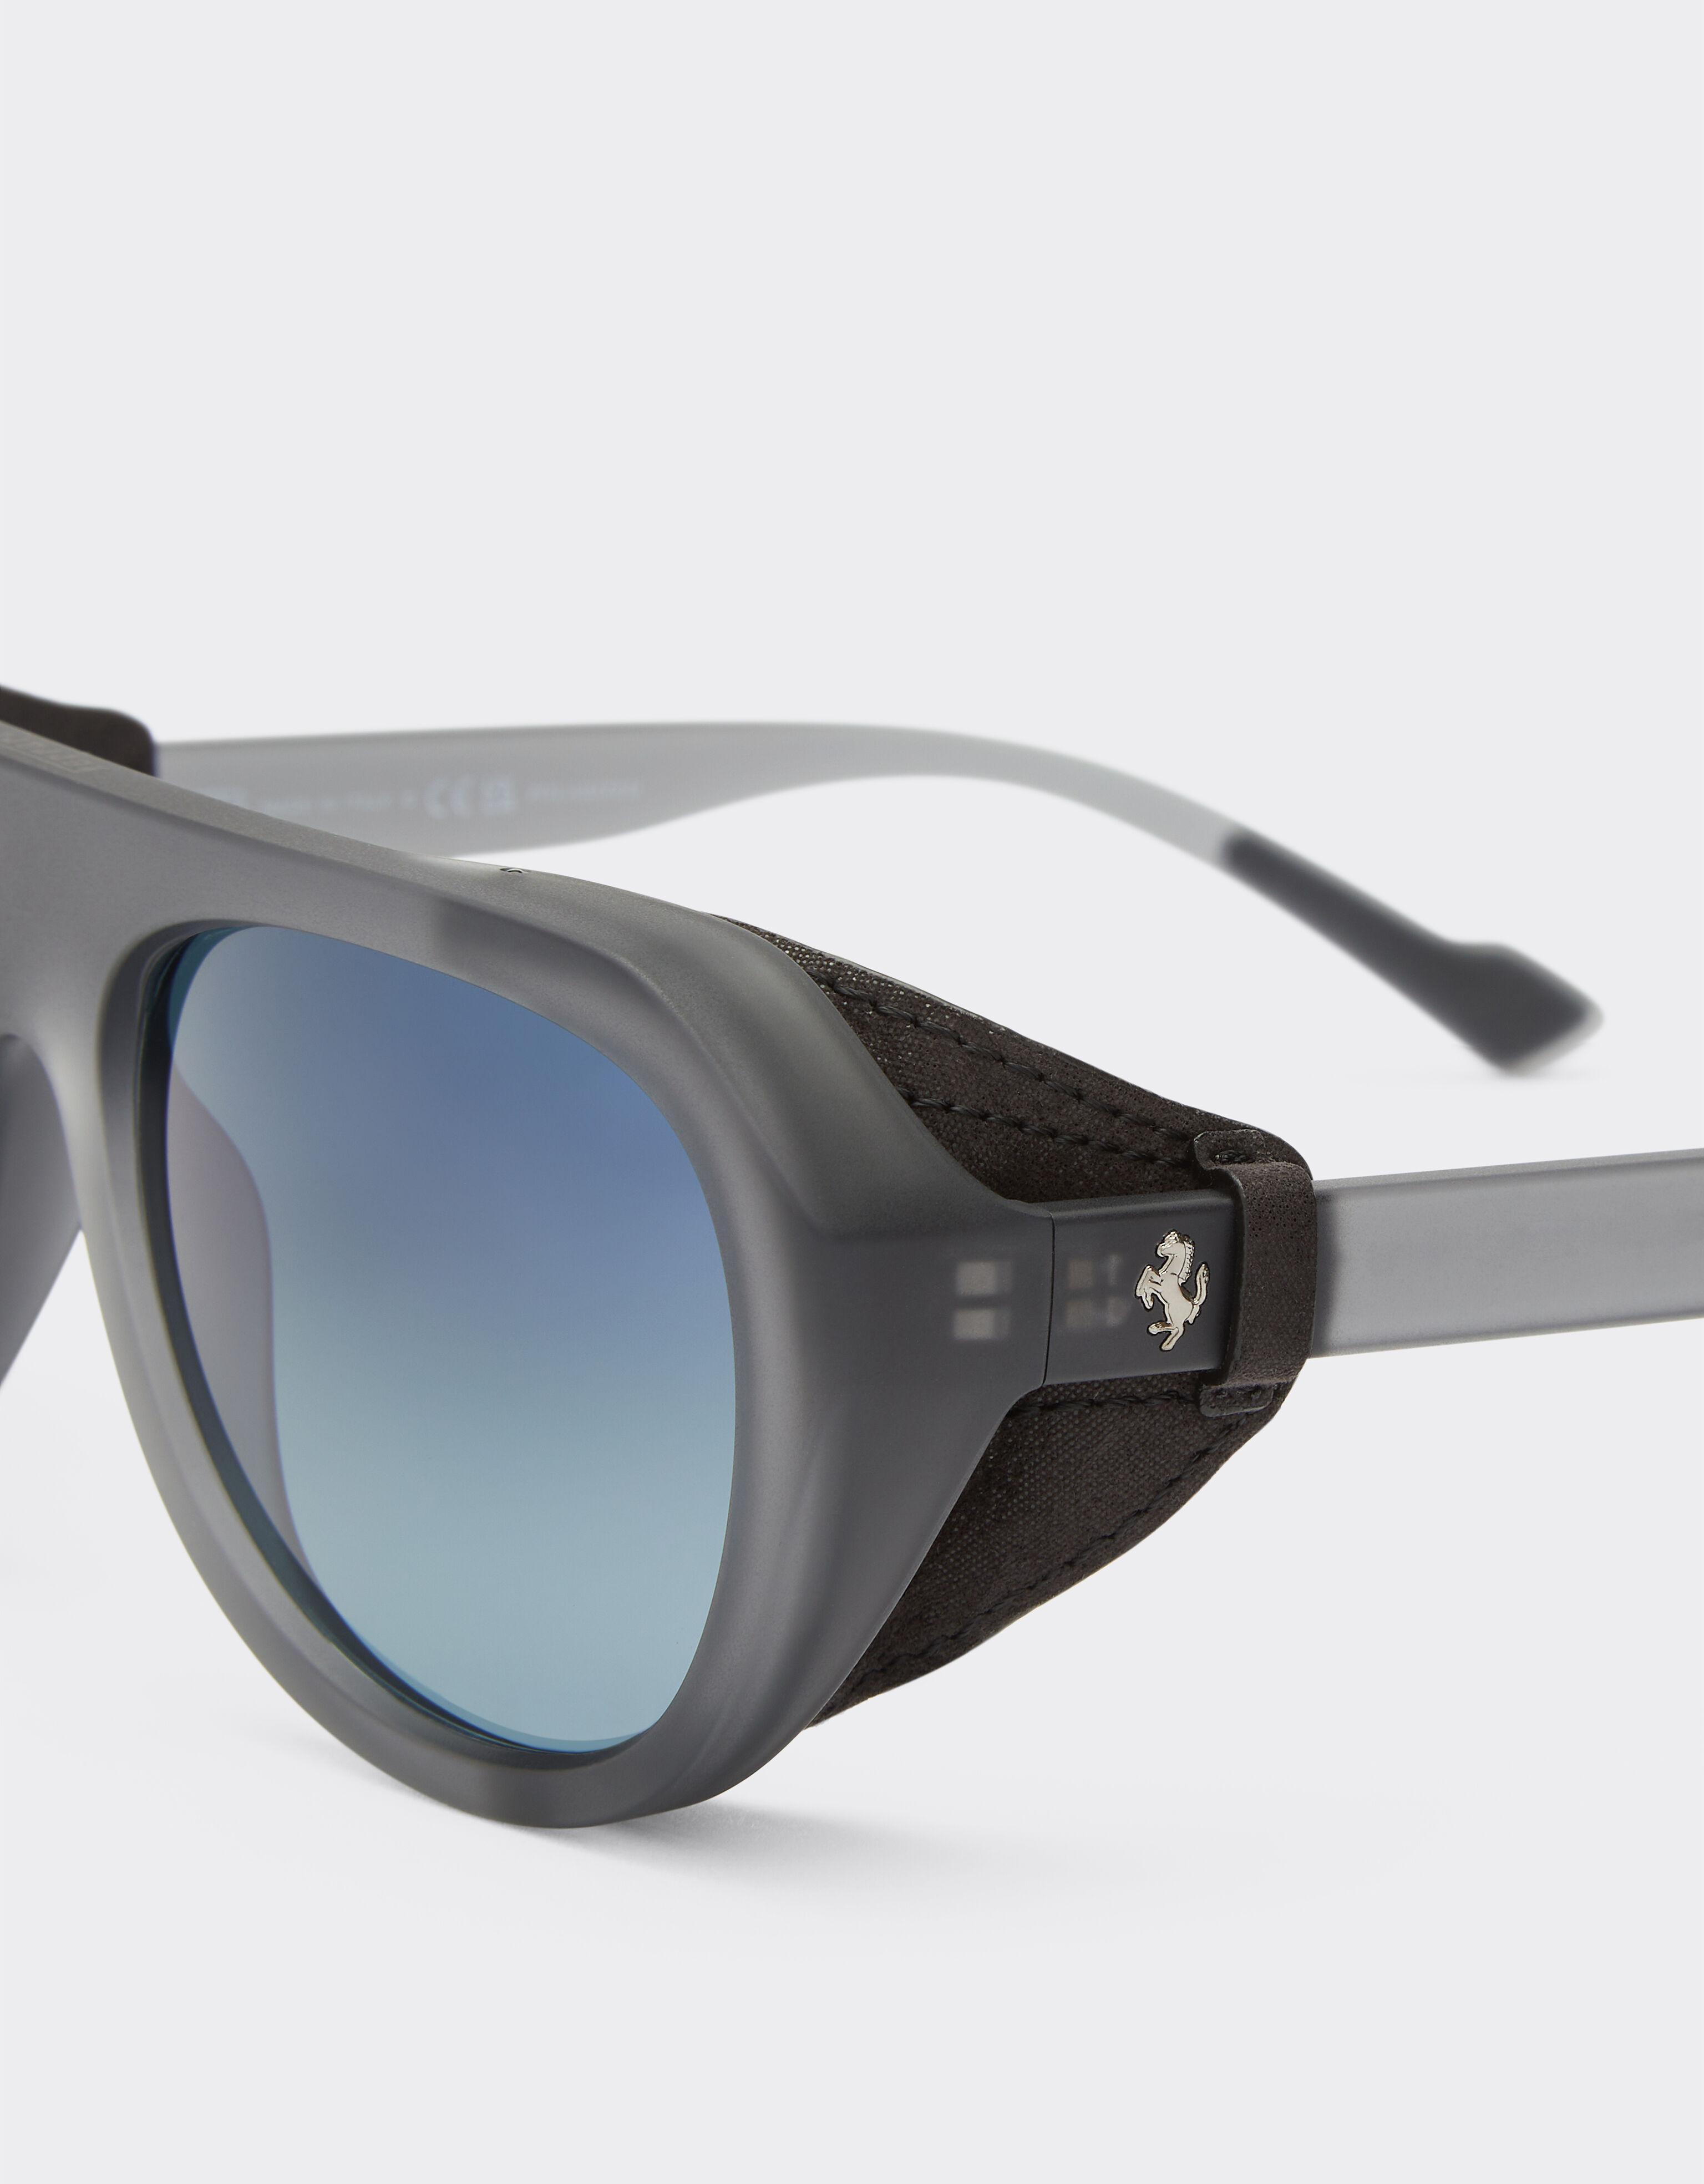 Ferrari Ferrari matt grey sunglasses with leather details and polarised lenses Ingrid F1255f